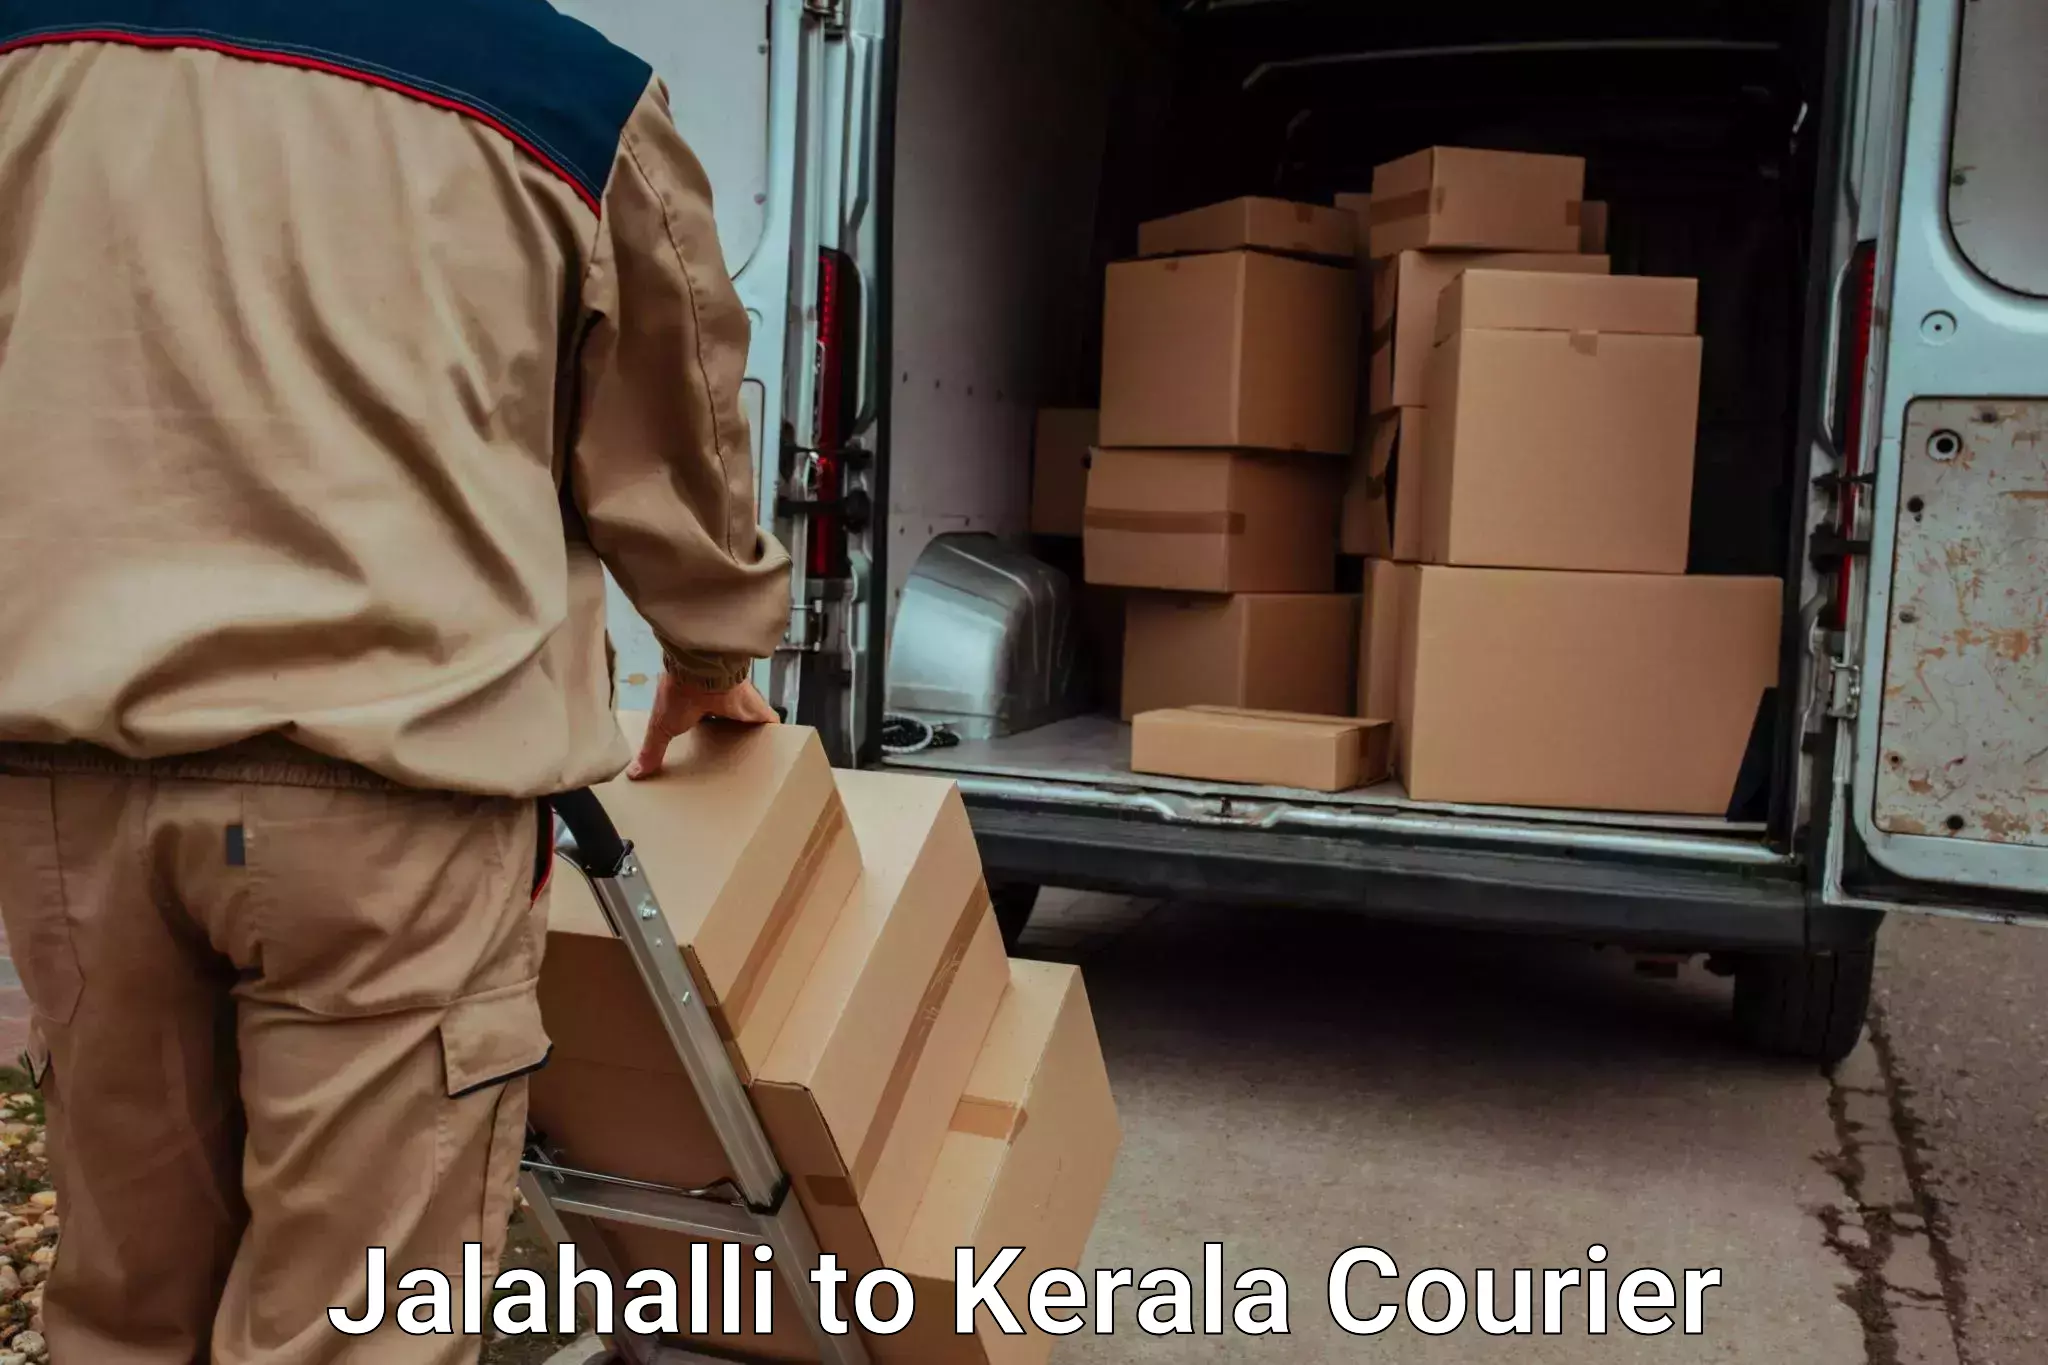 Professional moving company in Jalahalli to Kattappana